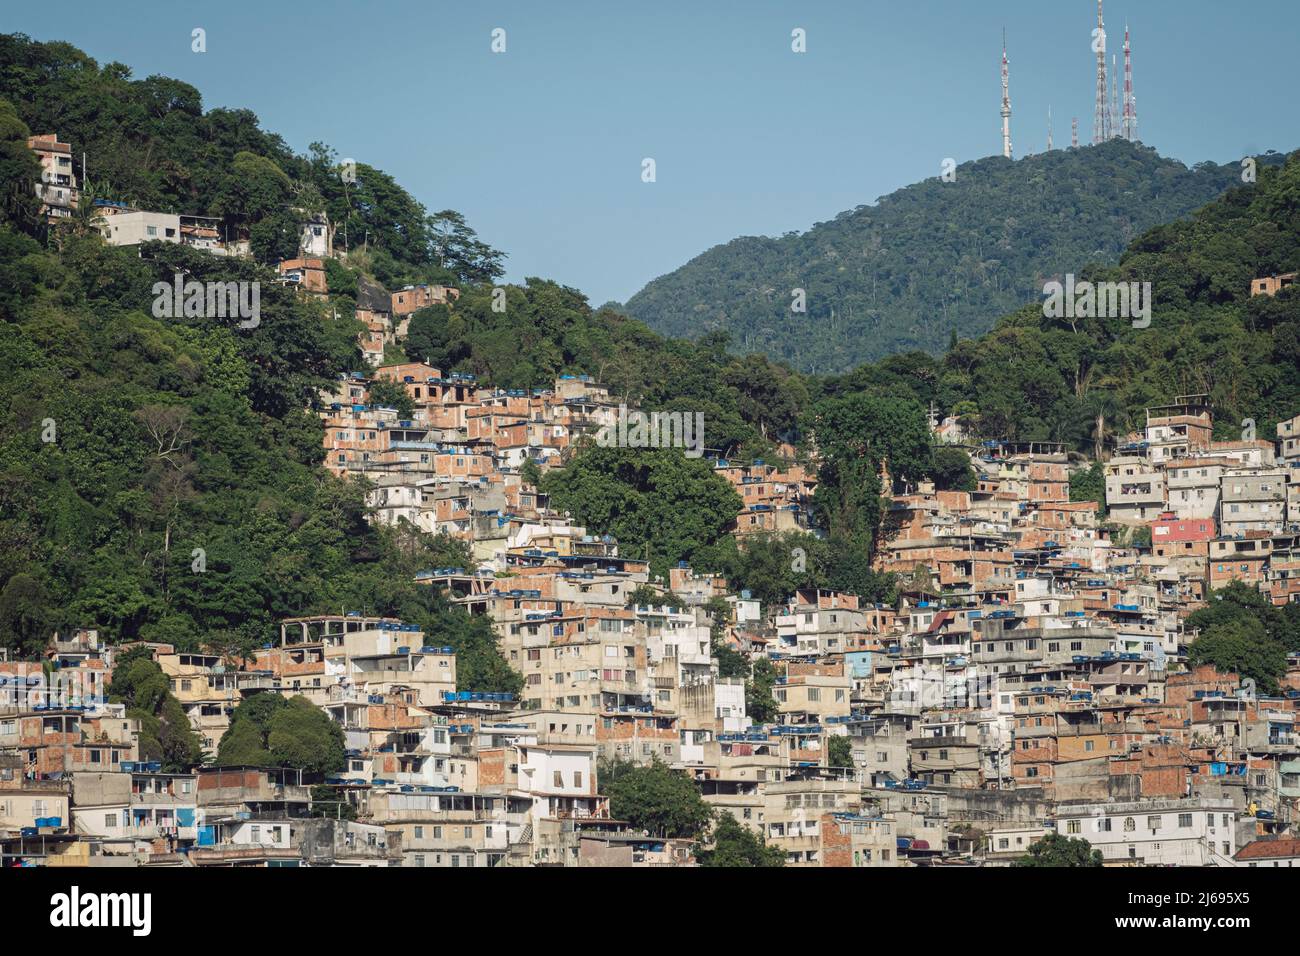 Tabajaras-Cabritos favela slum, communauté pauvre avec des logements pauvres, Parc national de Tijuca, Rio de Janeiro, Brésil Banque D'Images